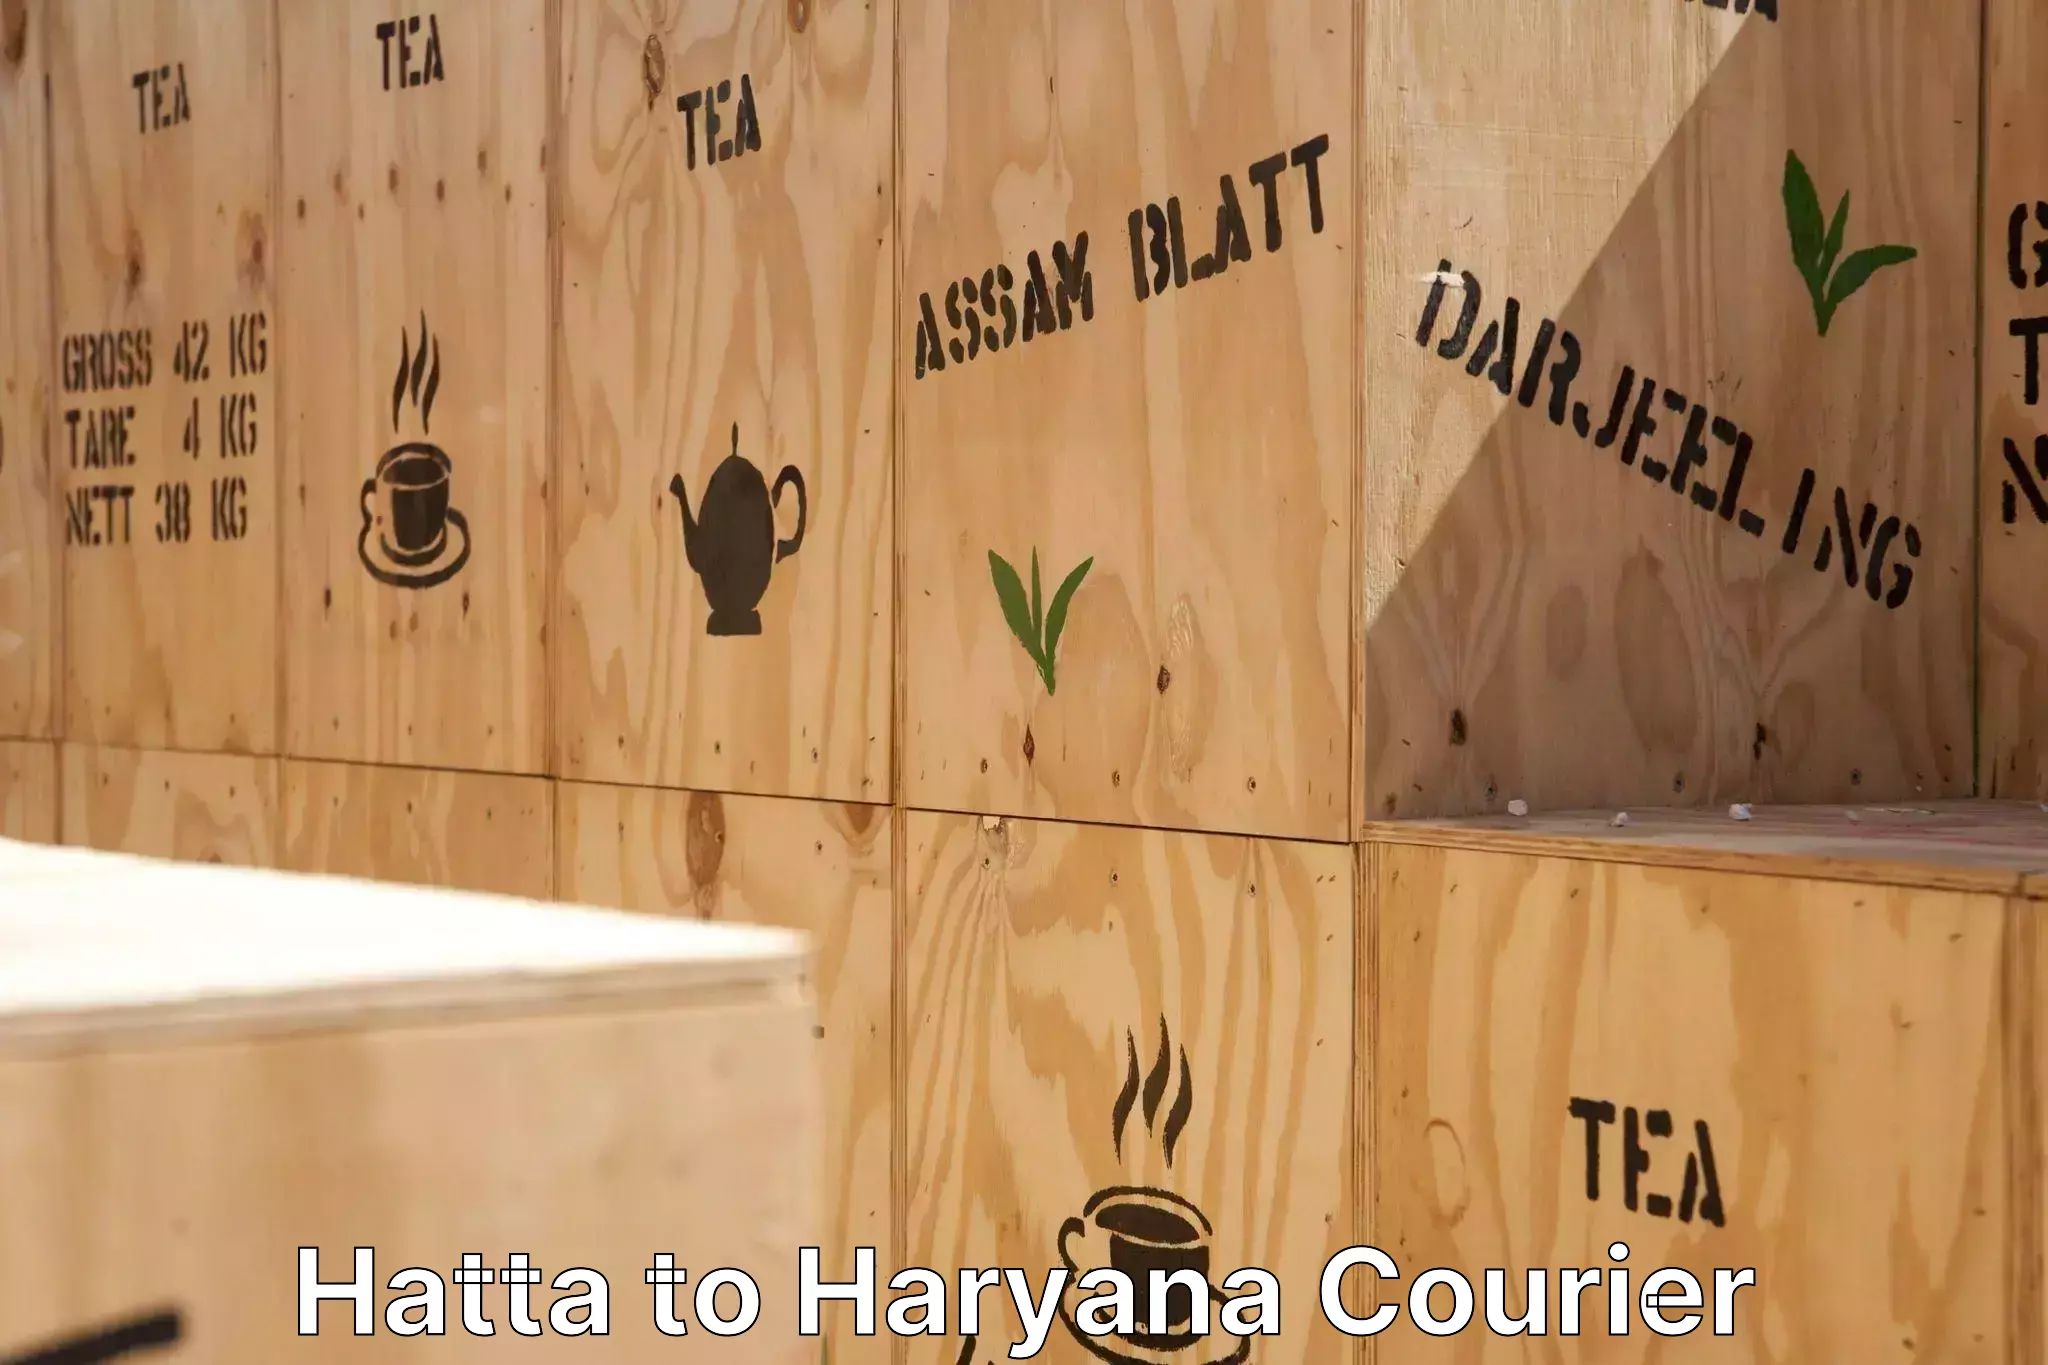 Professional moving company Hatta to Narwana